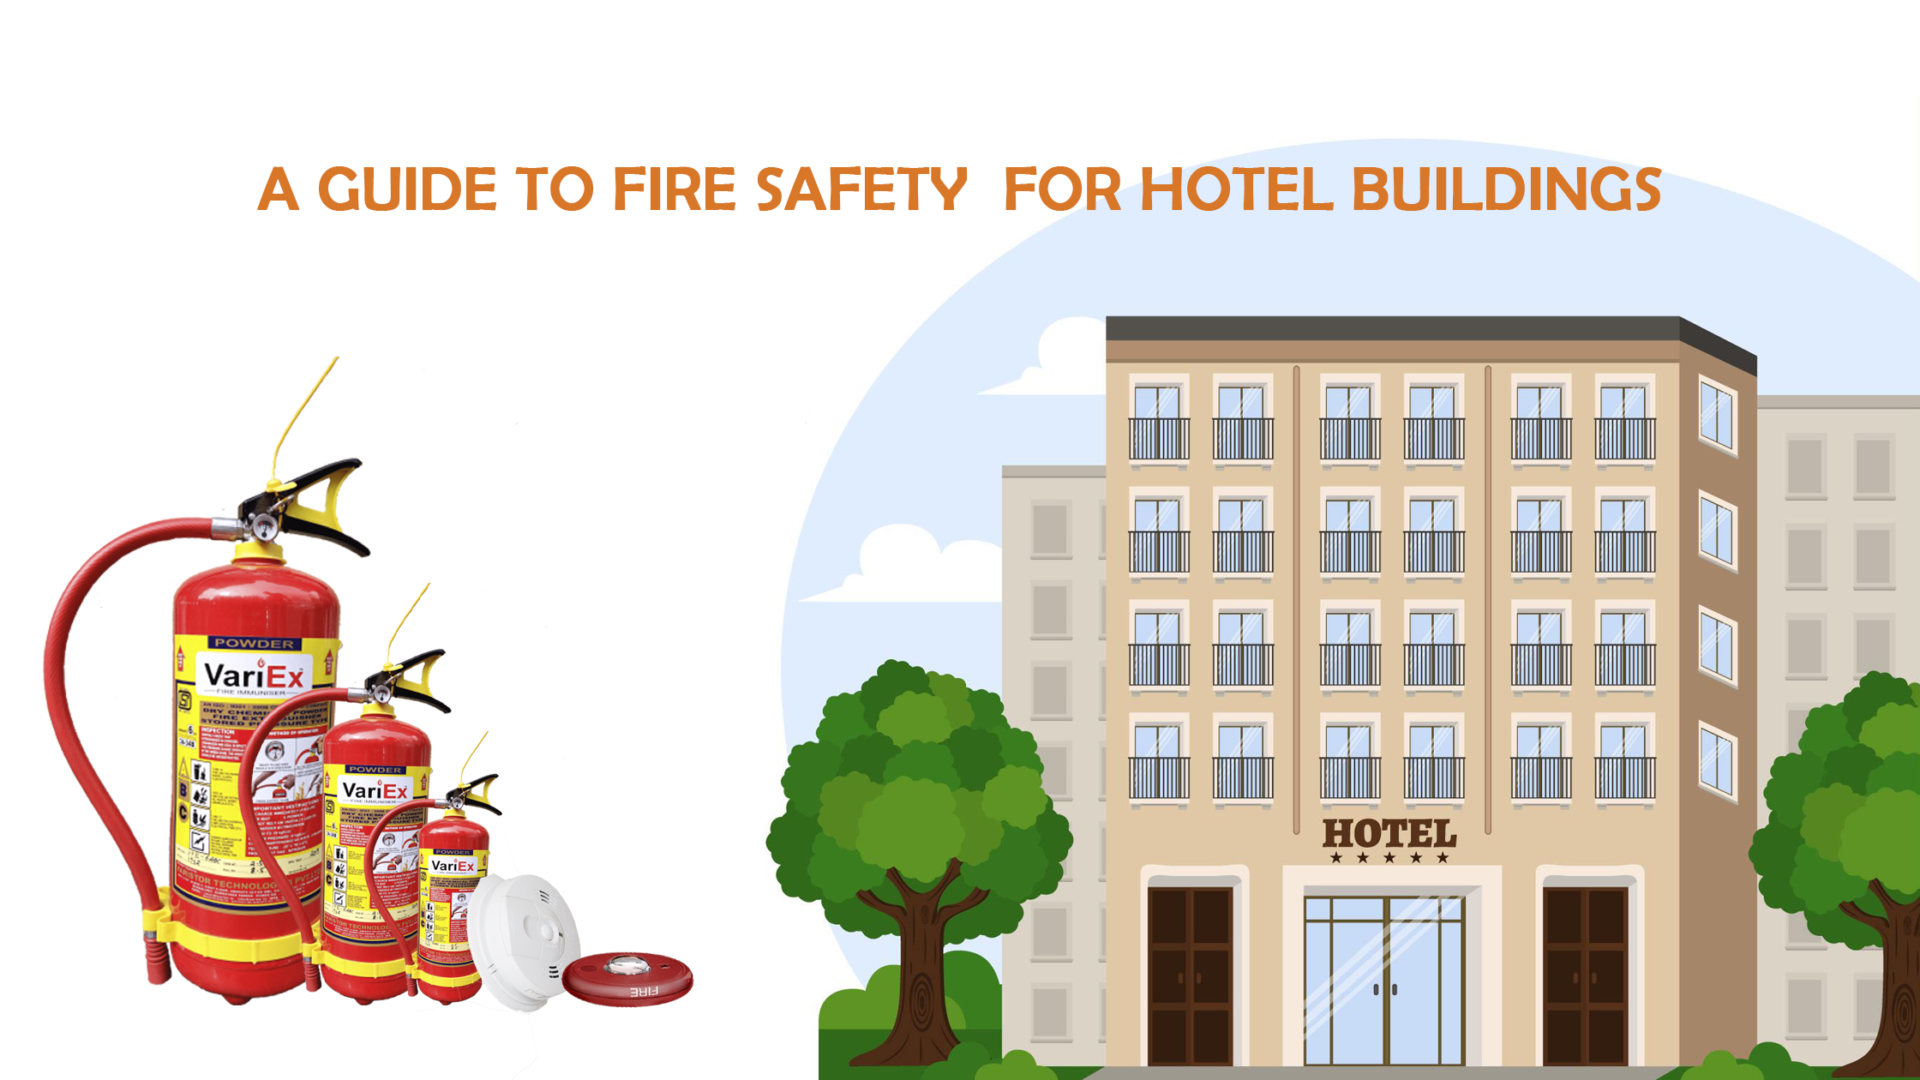 Guía de seguridad contra incendios para edificios de hoteles - Seguridad contra incendios en hoteles 8